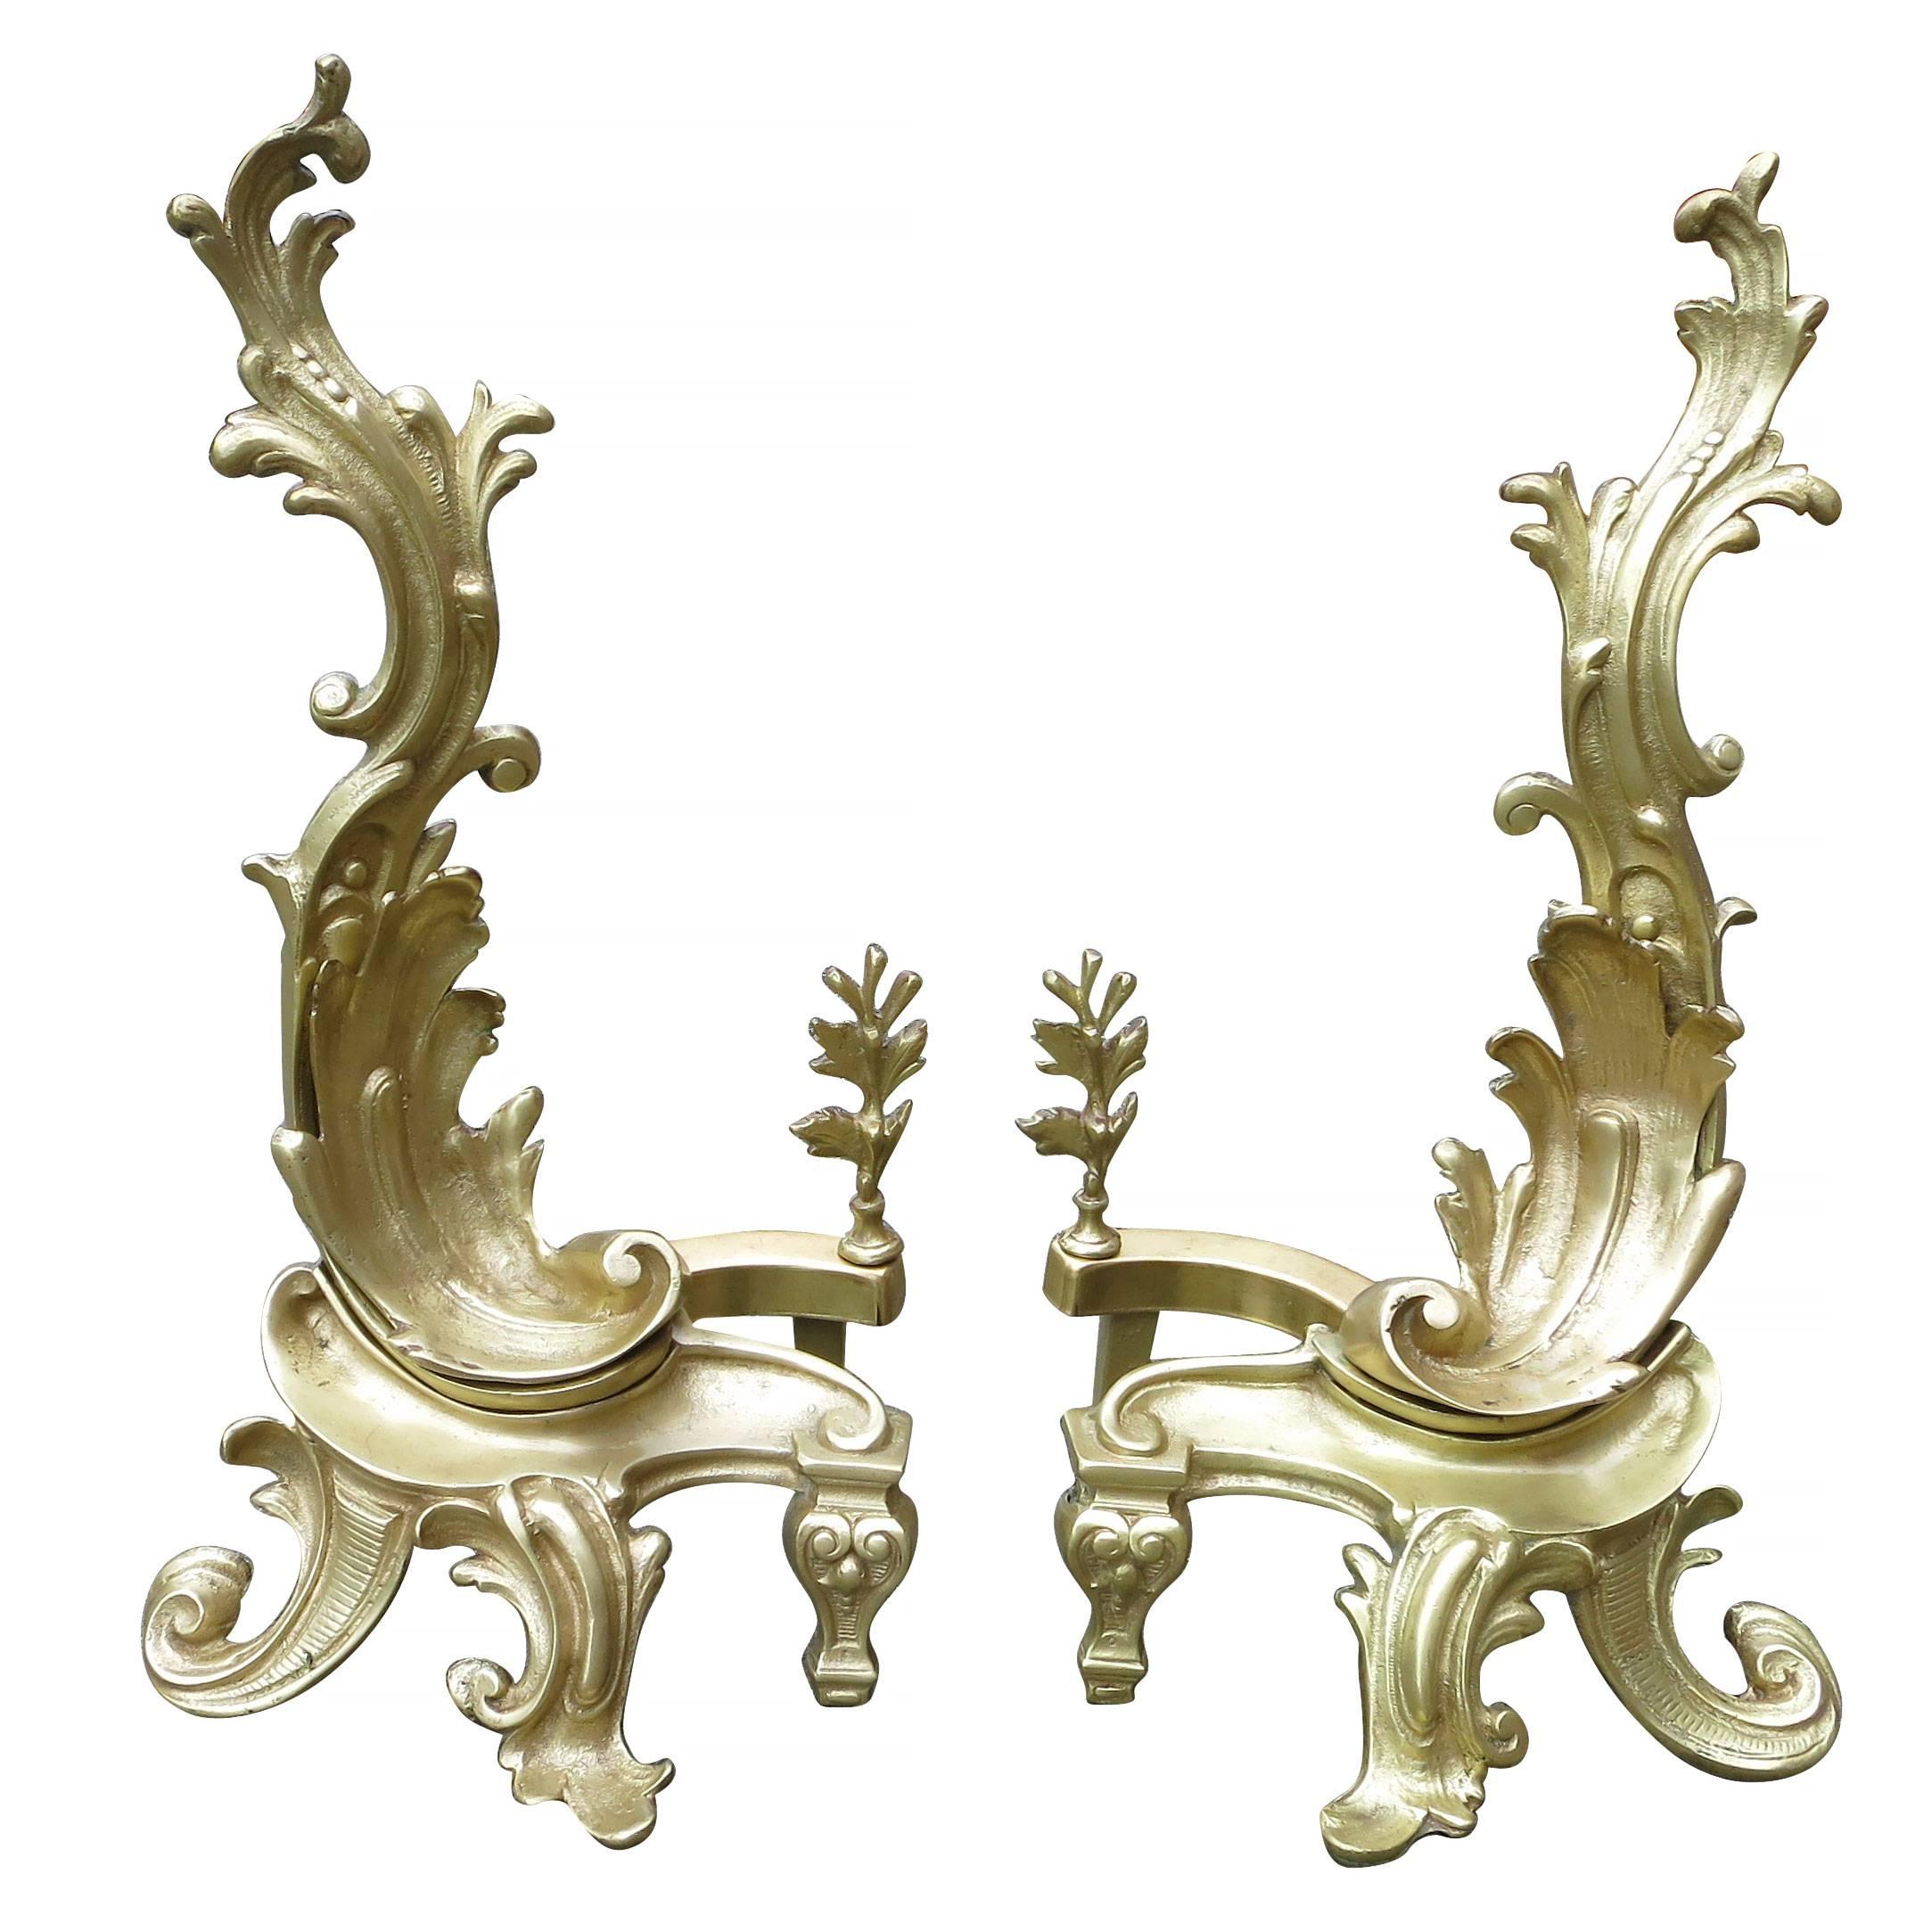 Chandeliers en laiton de la fin de l'époque victorienne présentant deux modèles de style rococo et baroque tardif à motifs asymétriques classiques. 

Fabriqué, vers 1890.

 